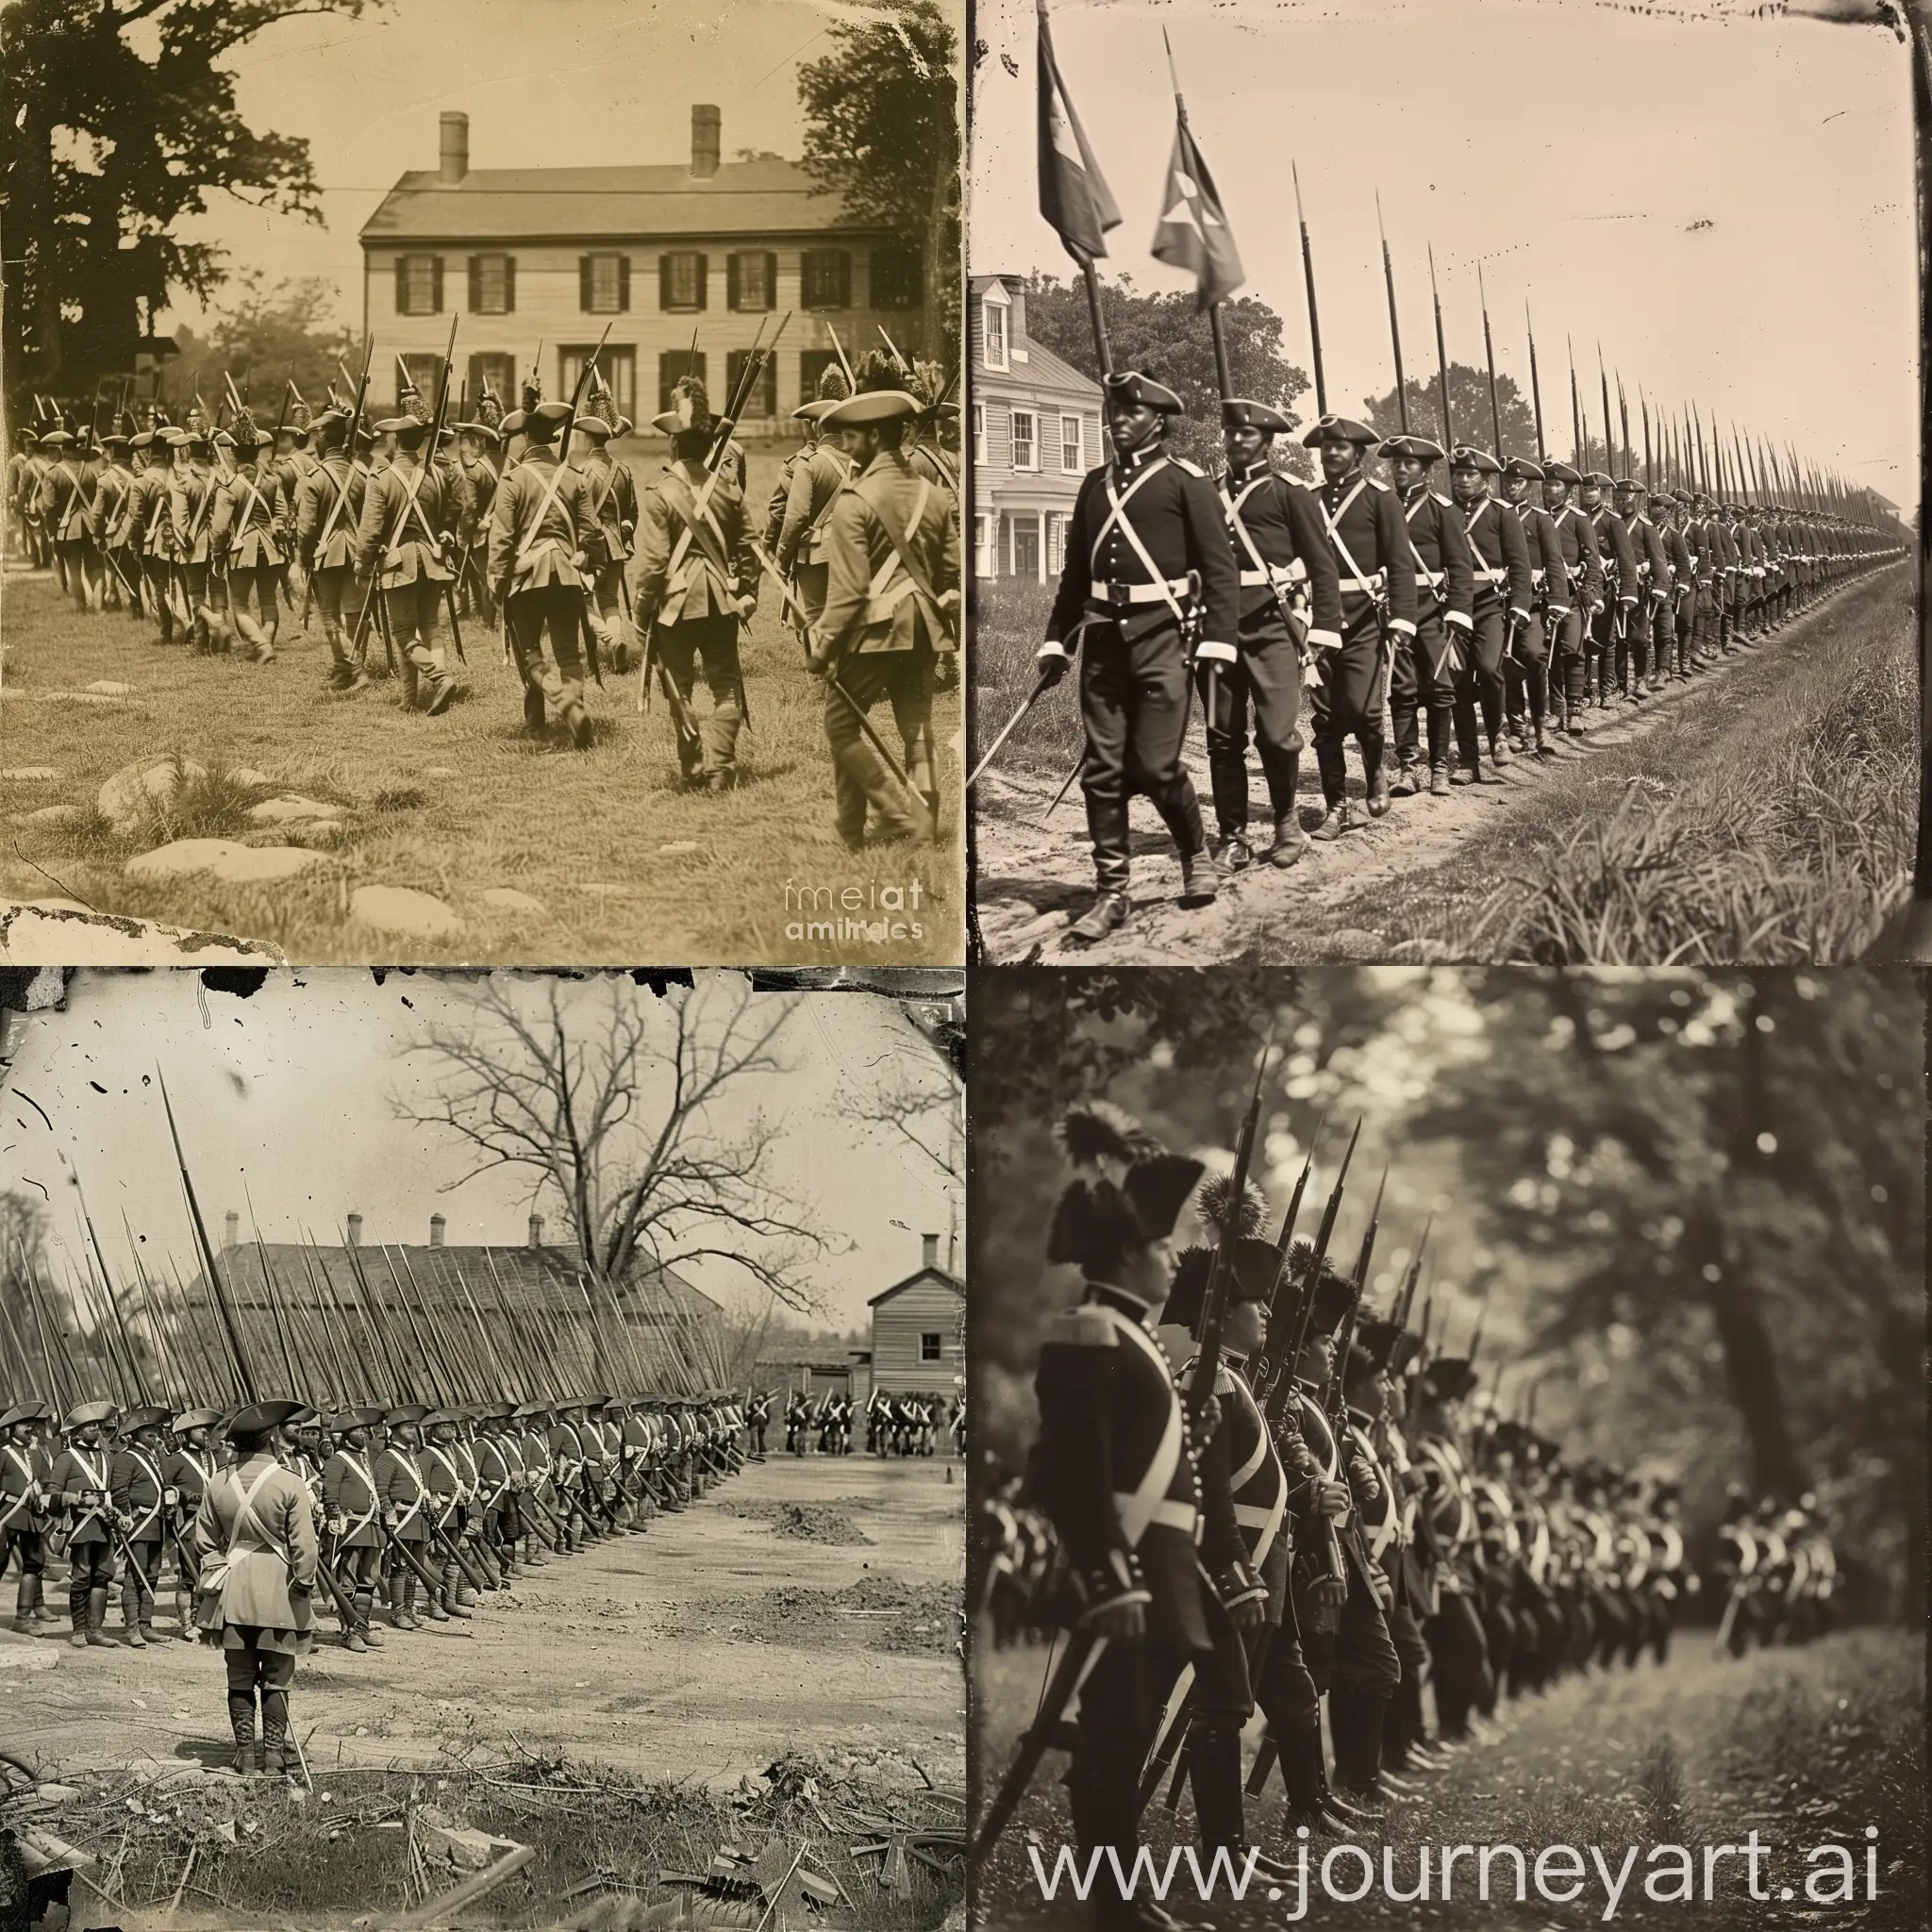 Revolutionary-War-Regiment-Formation-Photo